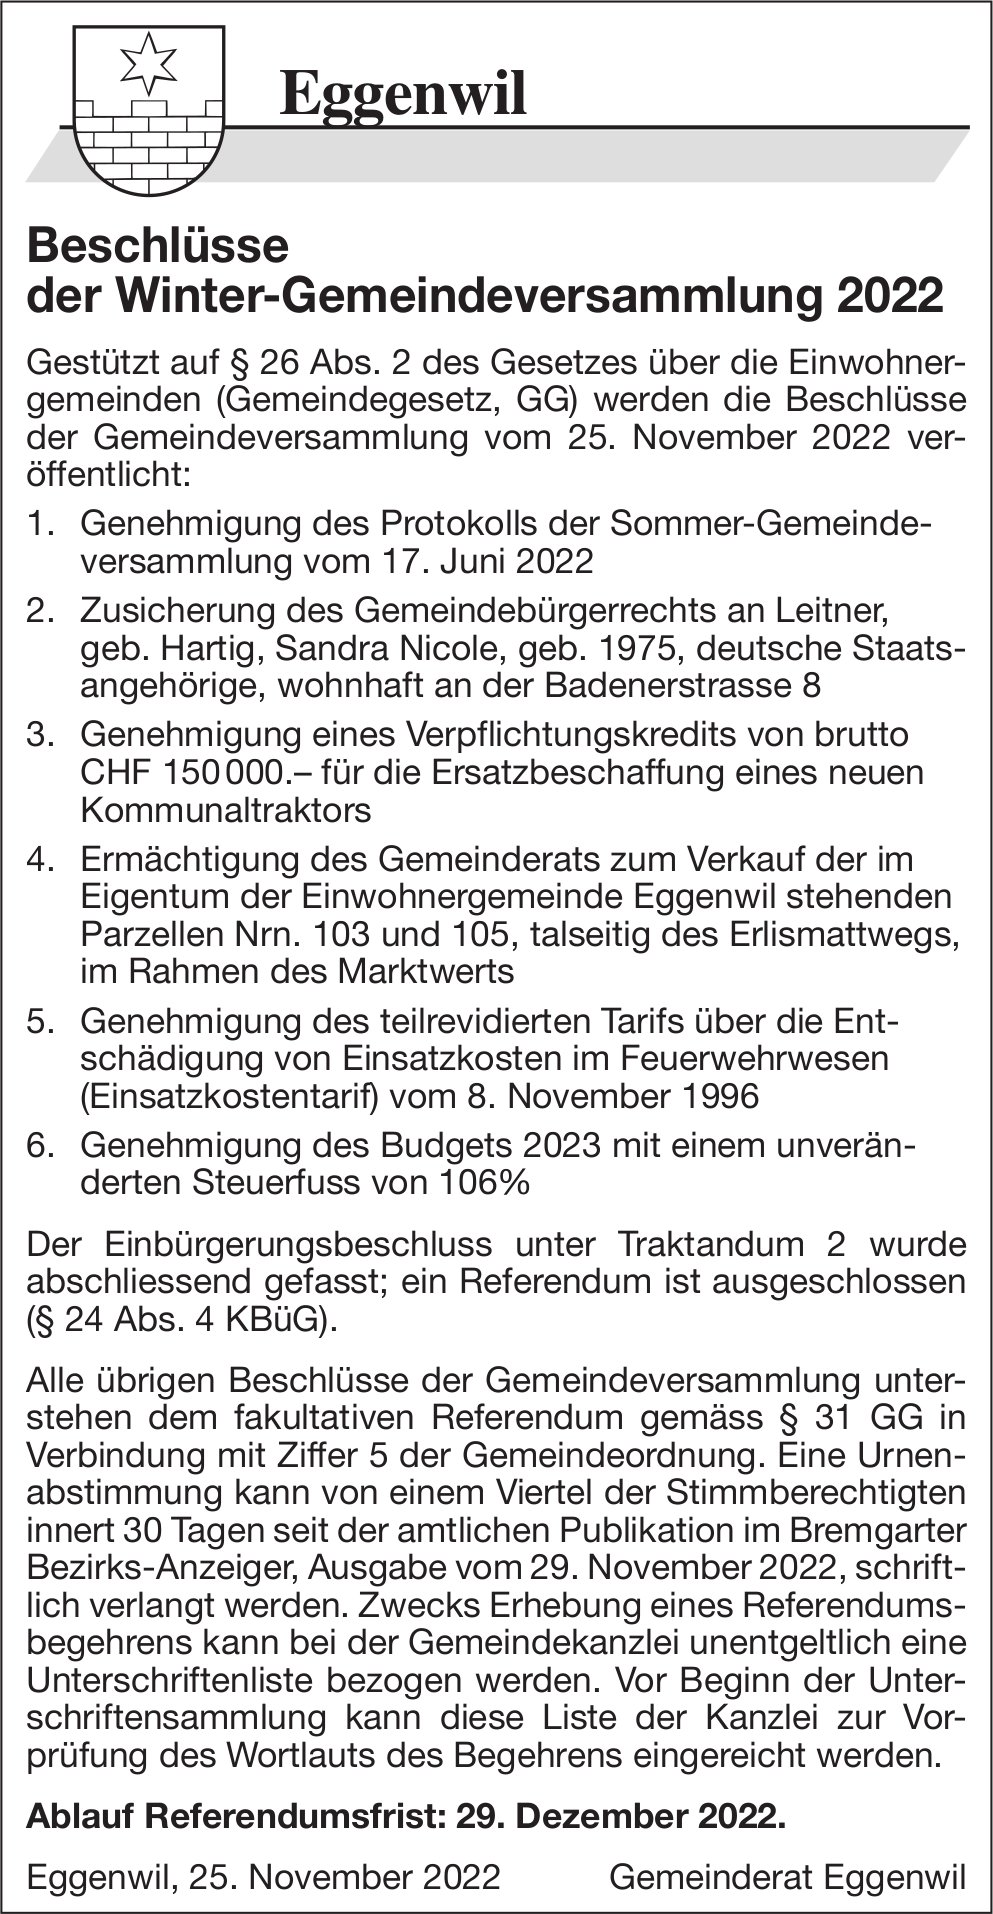 Eggenwil - Beschlüsse der Winter-Gemeindeversammlung 2022